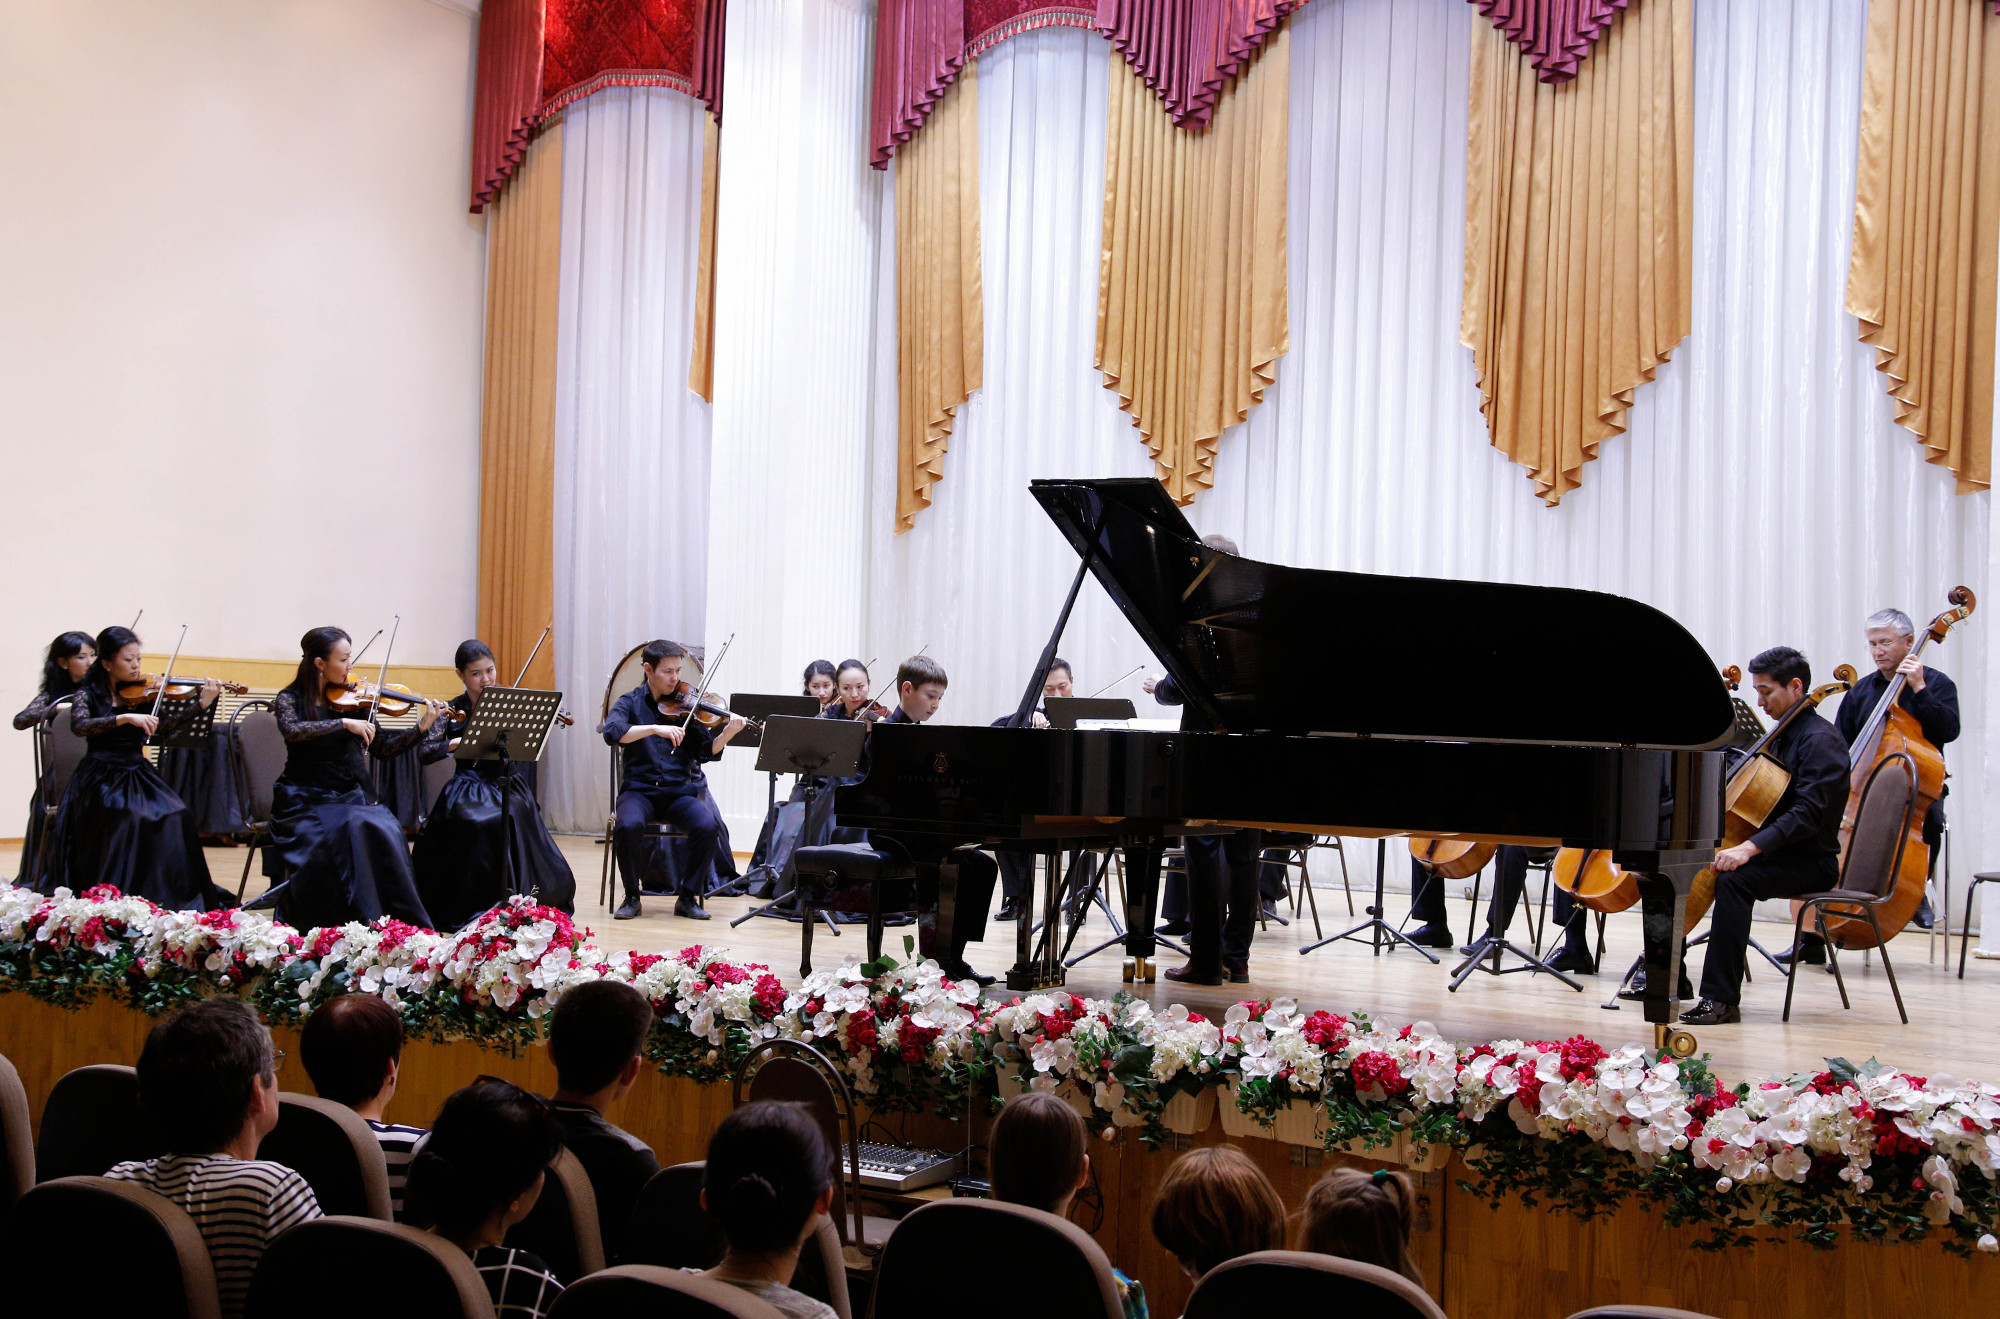 Совместный концерт 21 мая 2016 года с учащимися Карагандинской средней специализированной музыкальной школы